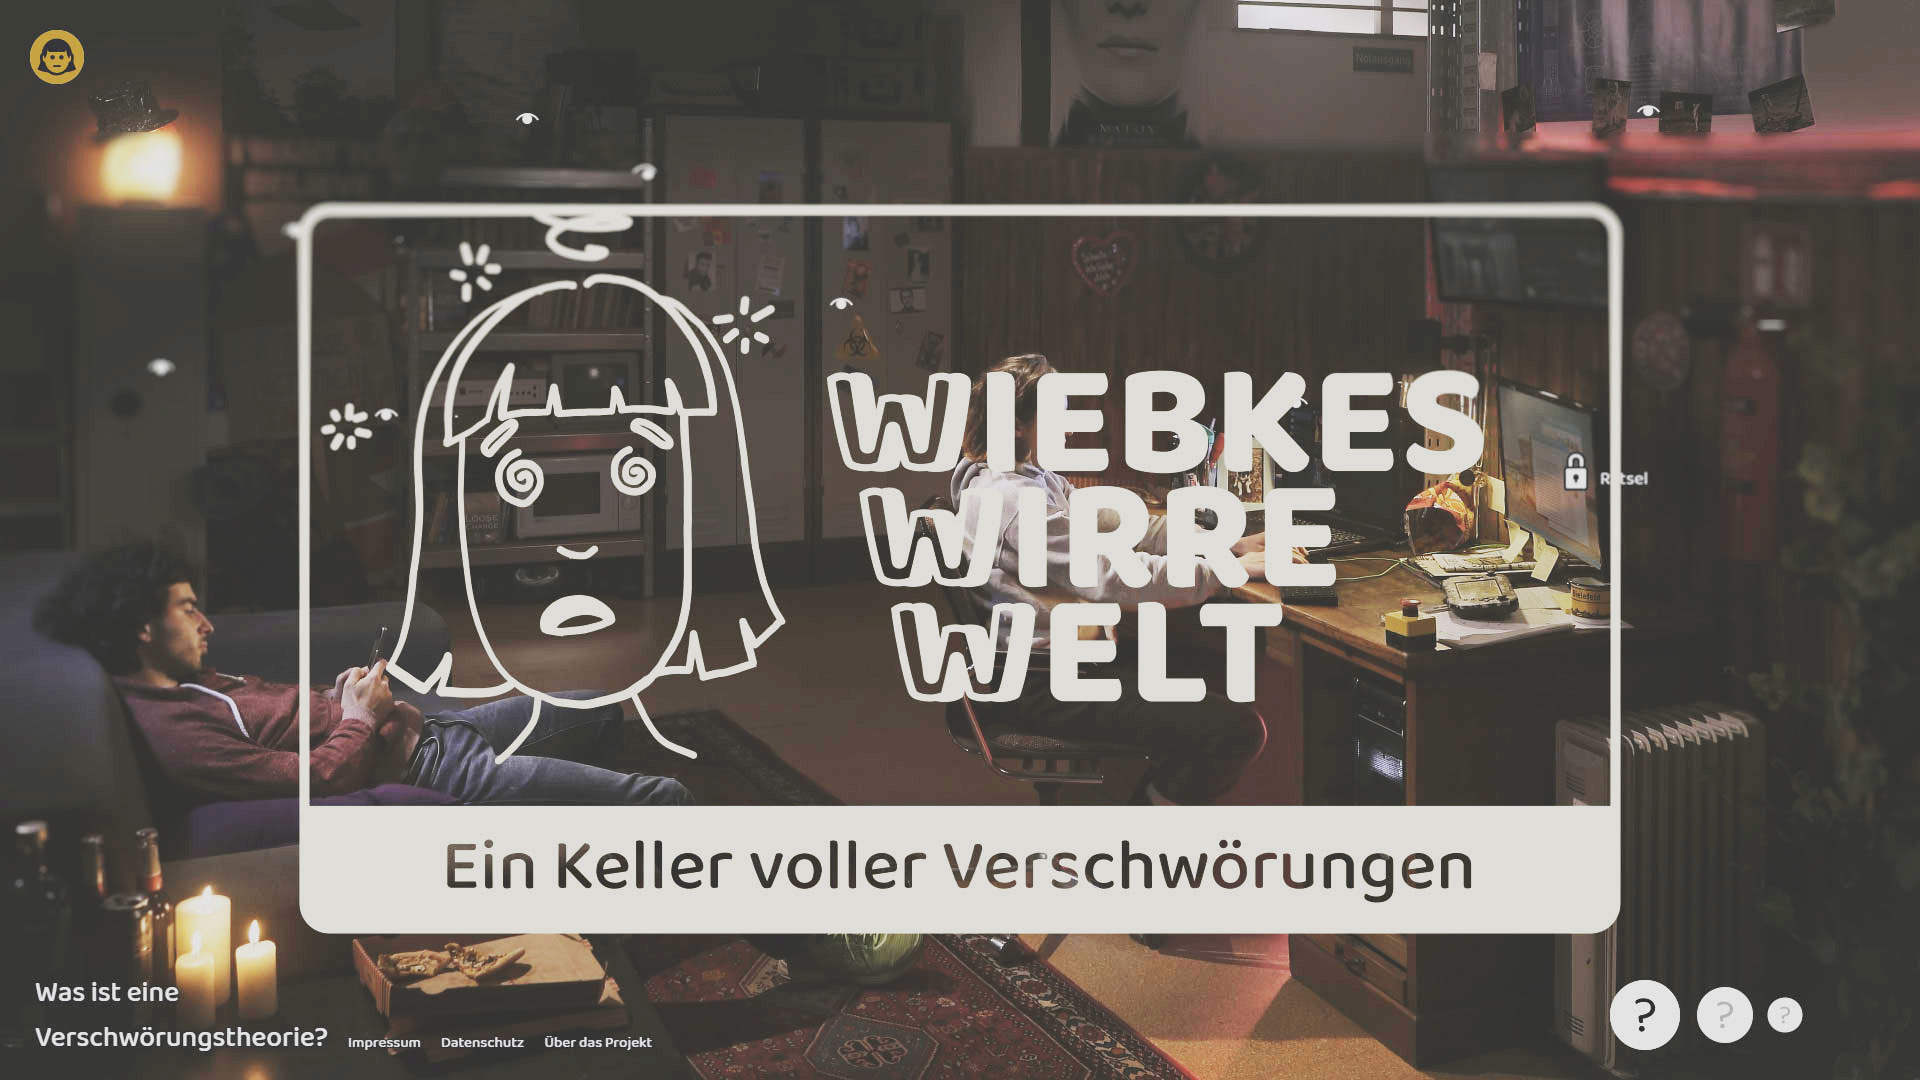 Featured image for “Wiebkes wirre Welt (Kubikfoto)”